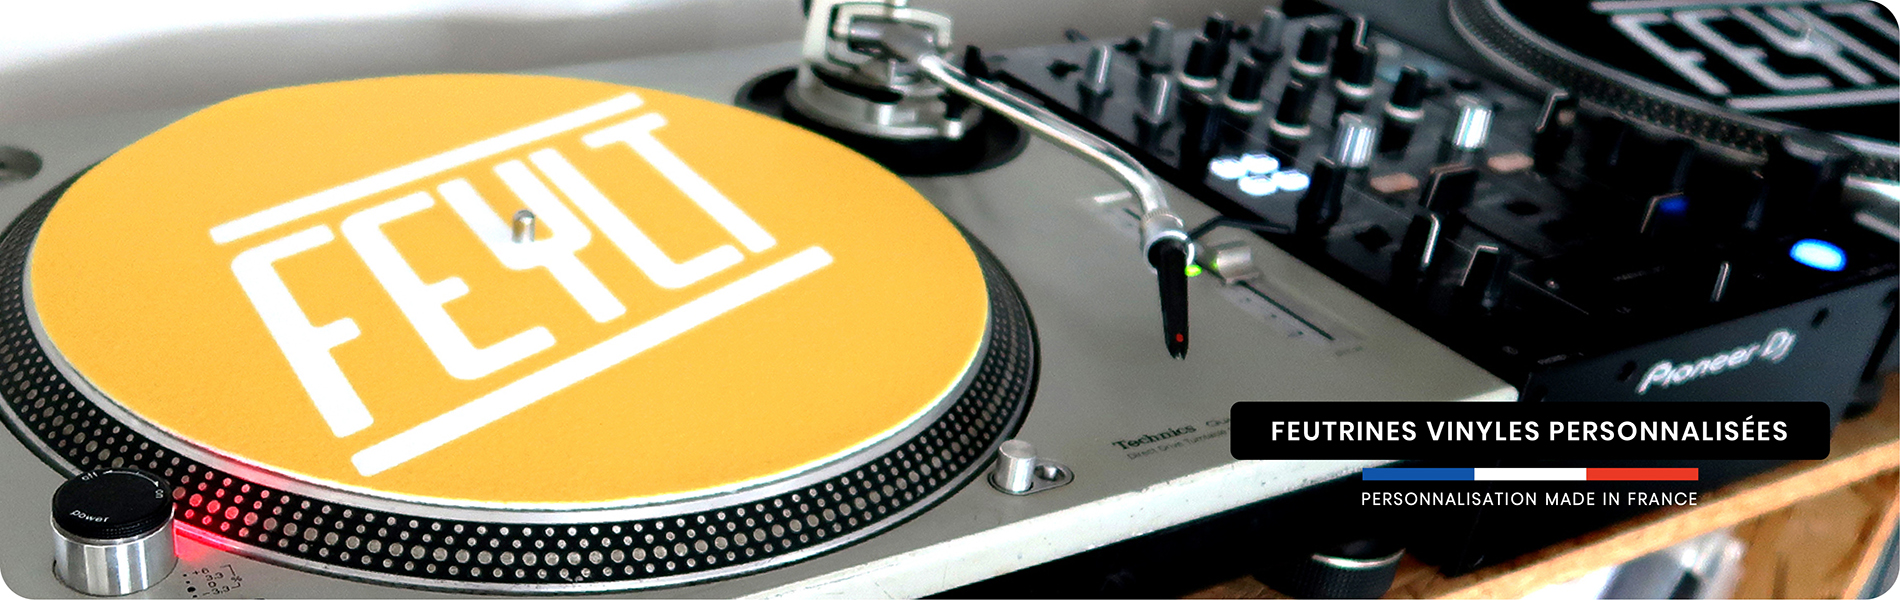 FKweb.net - Création logo sur feutrine vinyle pour le mashup DJ